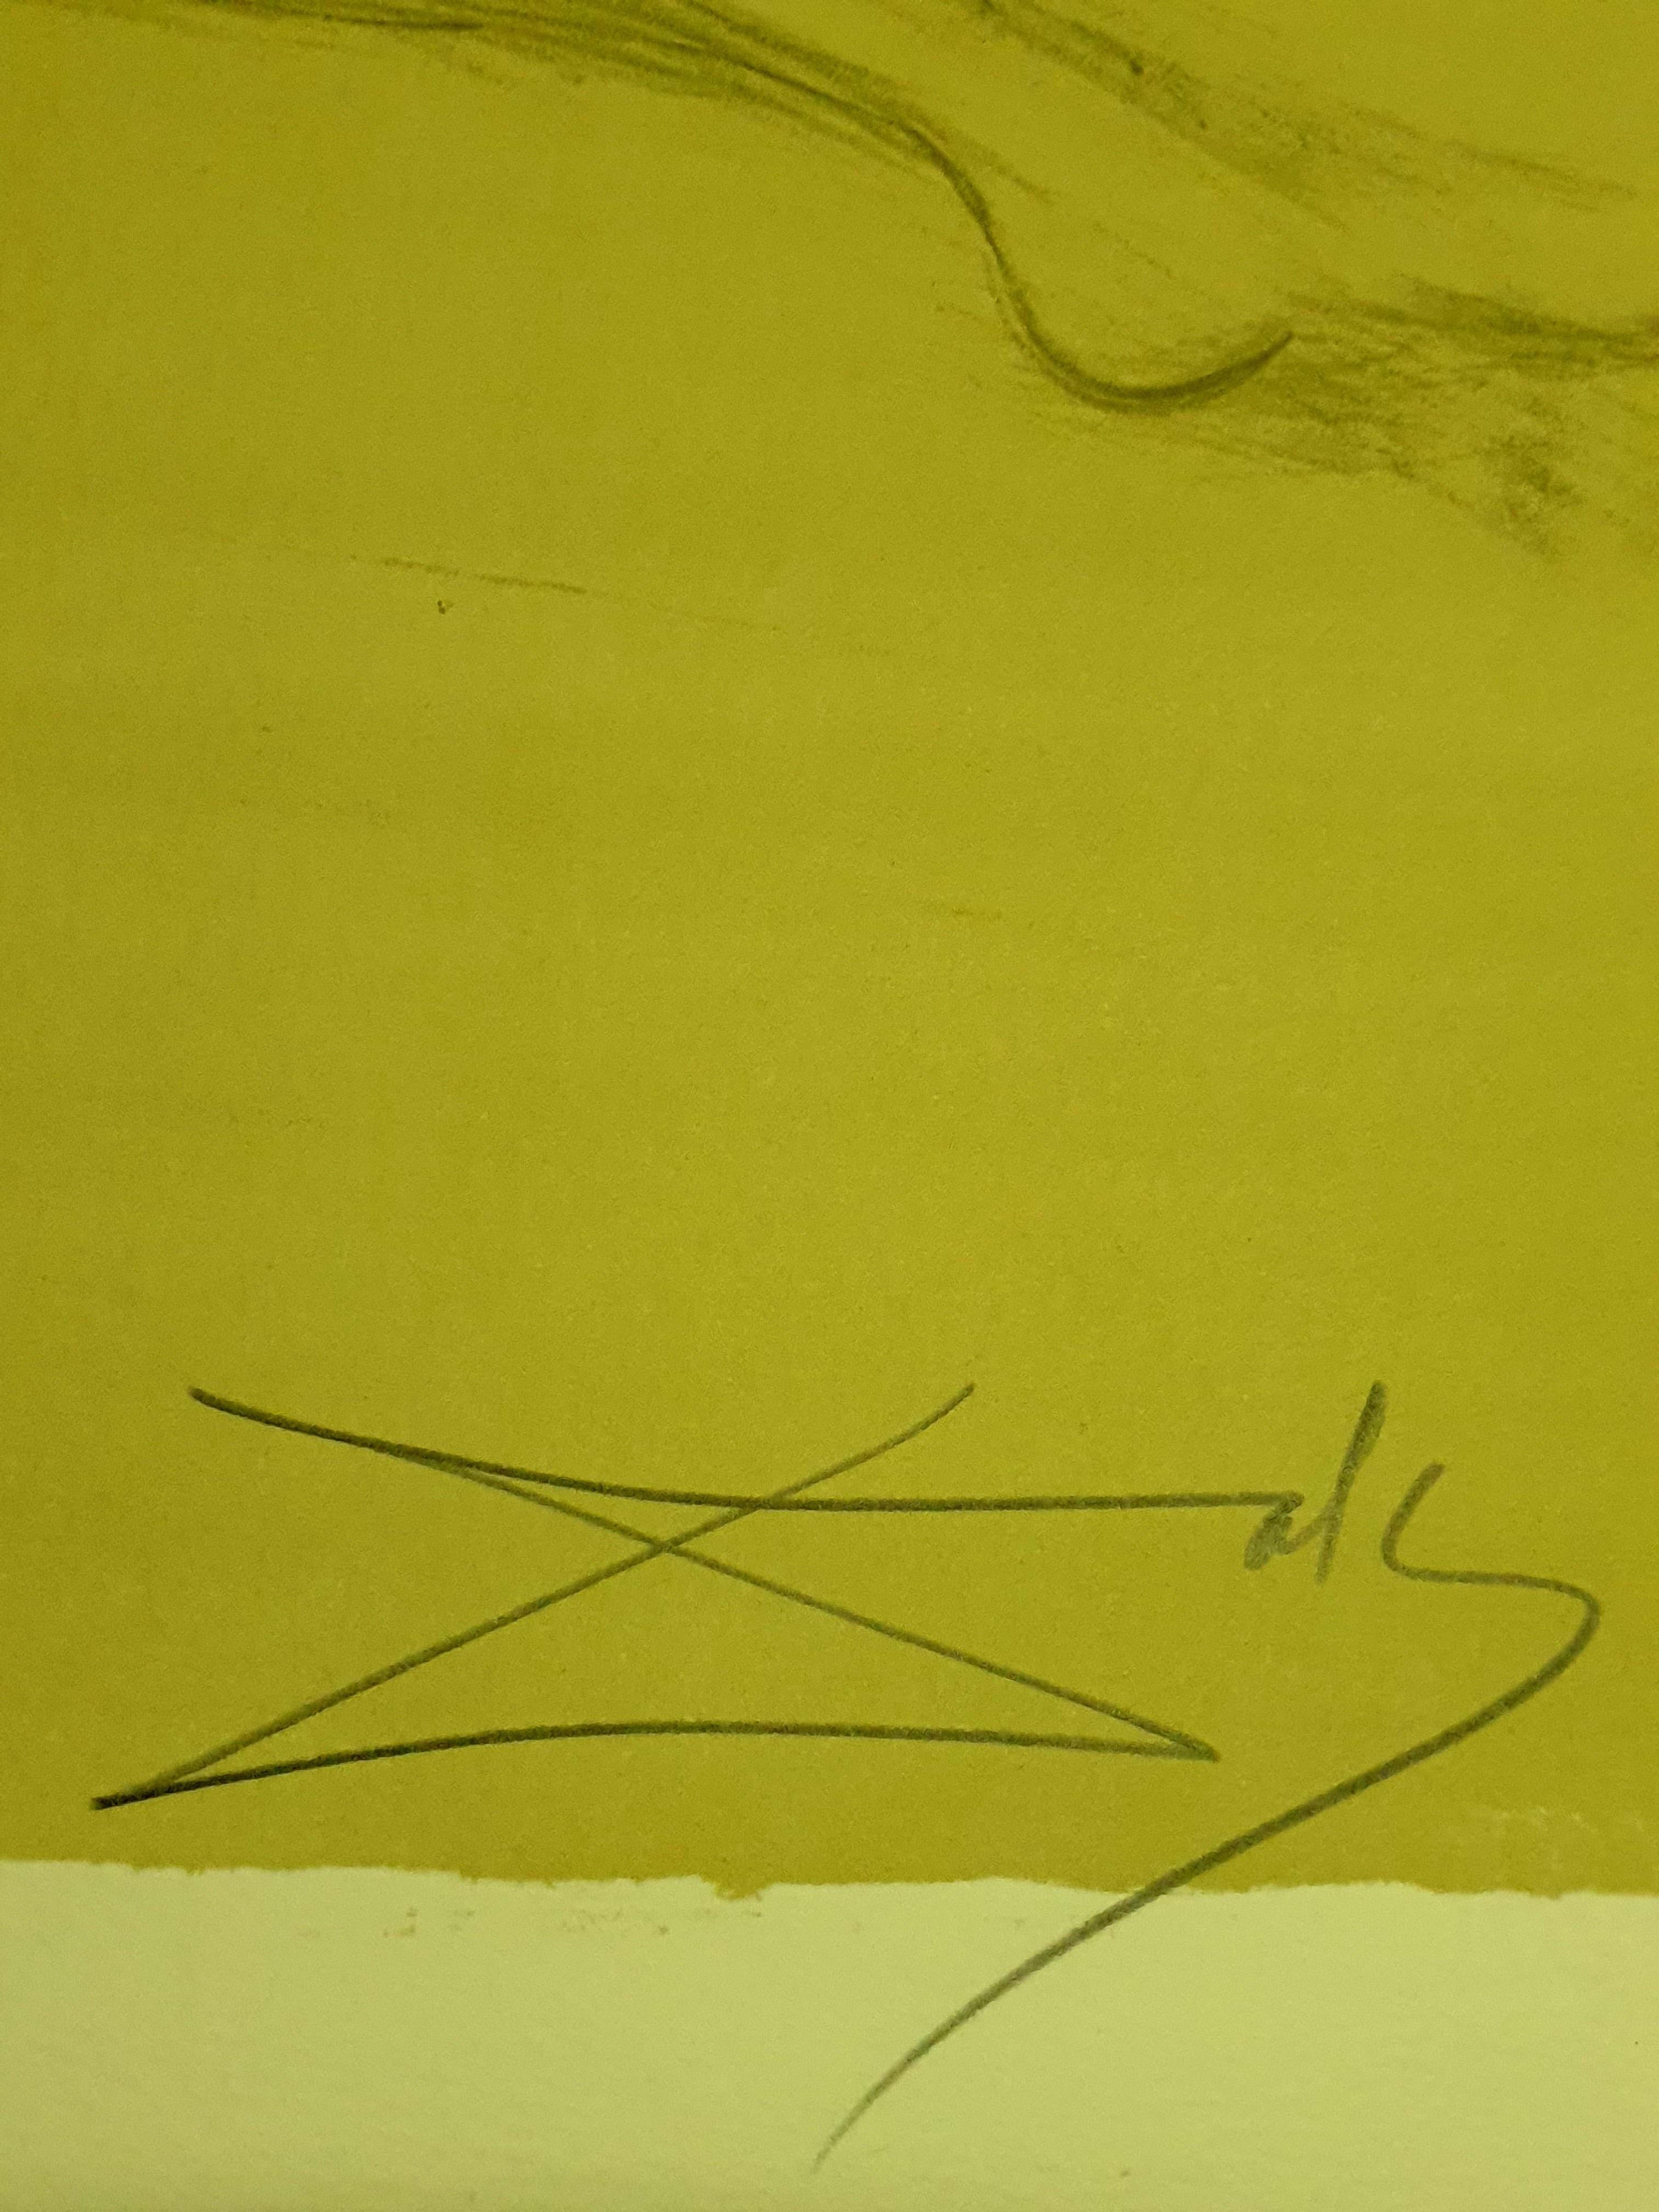 Salvador Dali - Am Strand - Original Handsignierte Lithographie
Abmessungen: 51 x 71 cm
1970
Mit Bleistift signiert und nummeriert
Ausgabe : /CXX
Referenzen : Feld 70-8